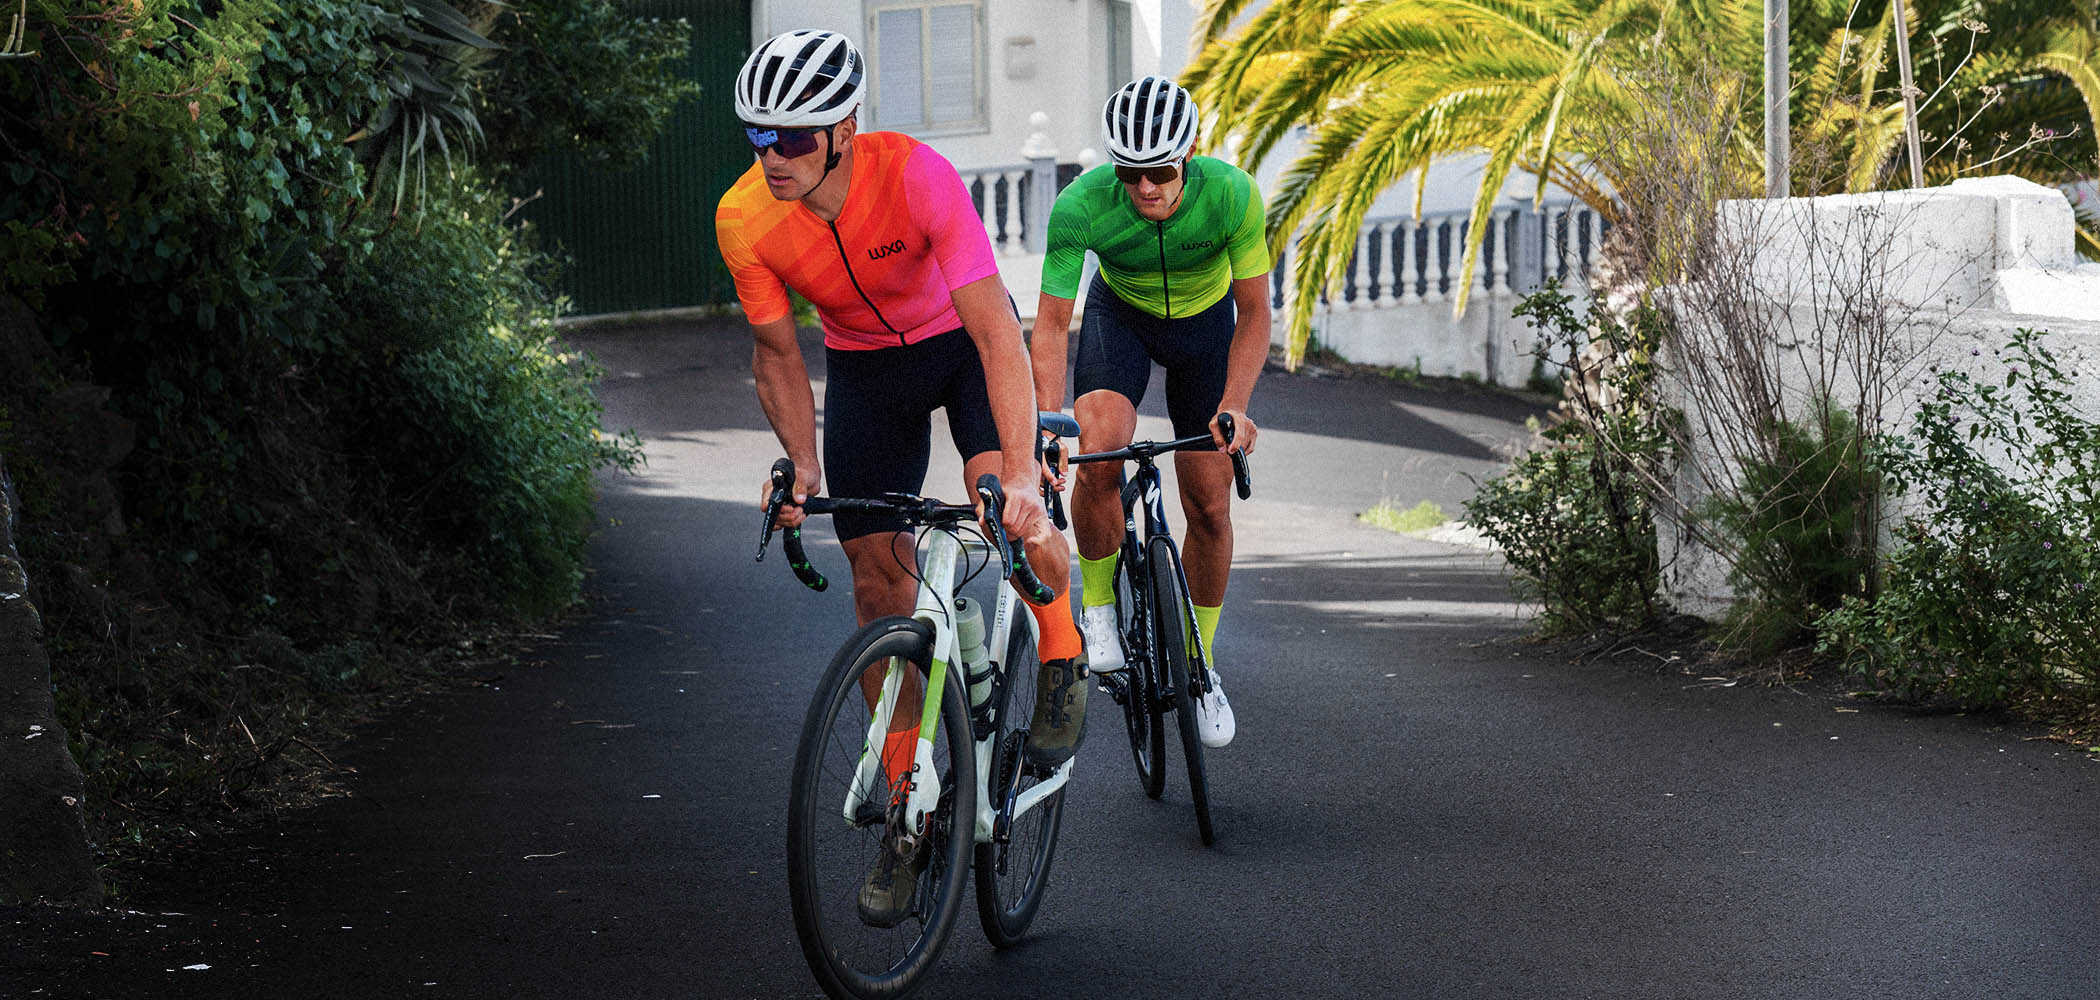 Radfahrer, die Luxa-Radsportbekleidung tragen, tragen auch passende Radsportsocken in den gleichen Farben wie ihre Uniformen